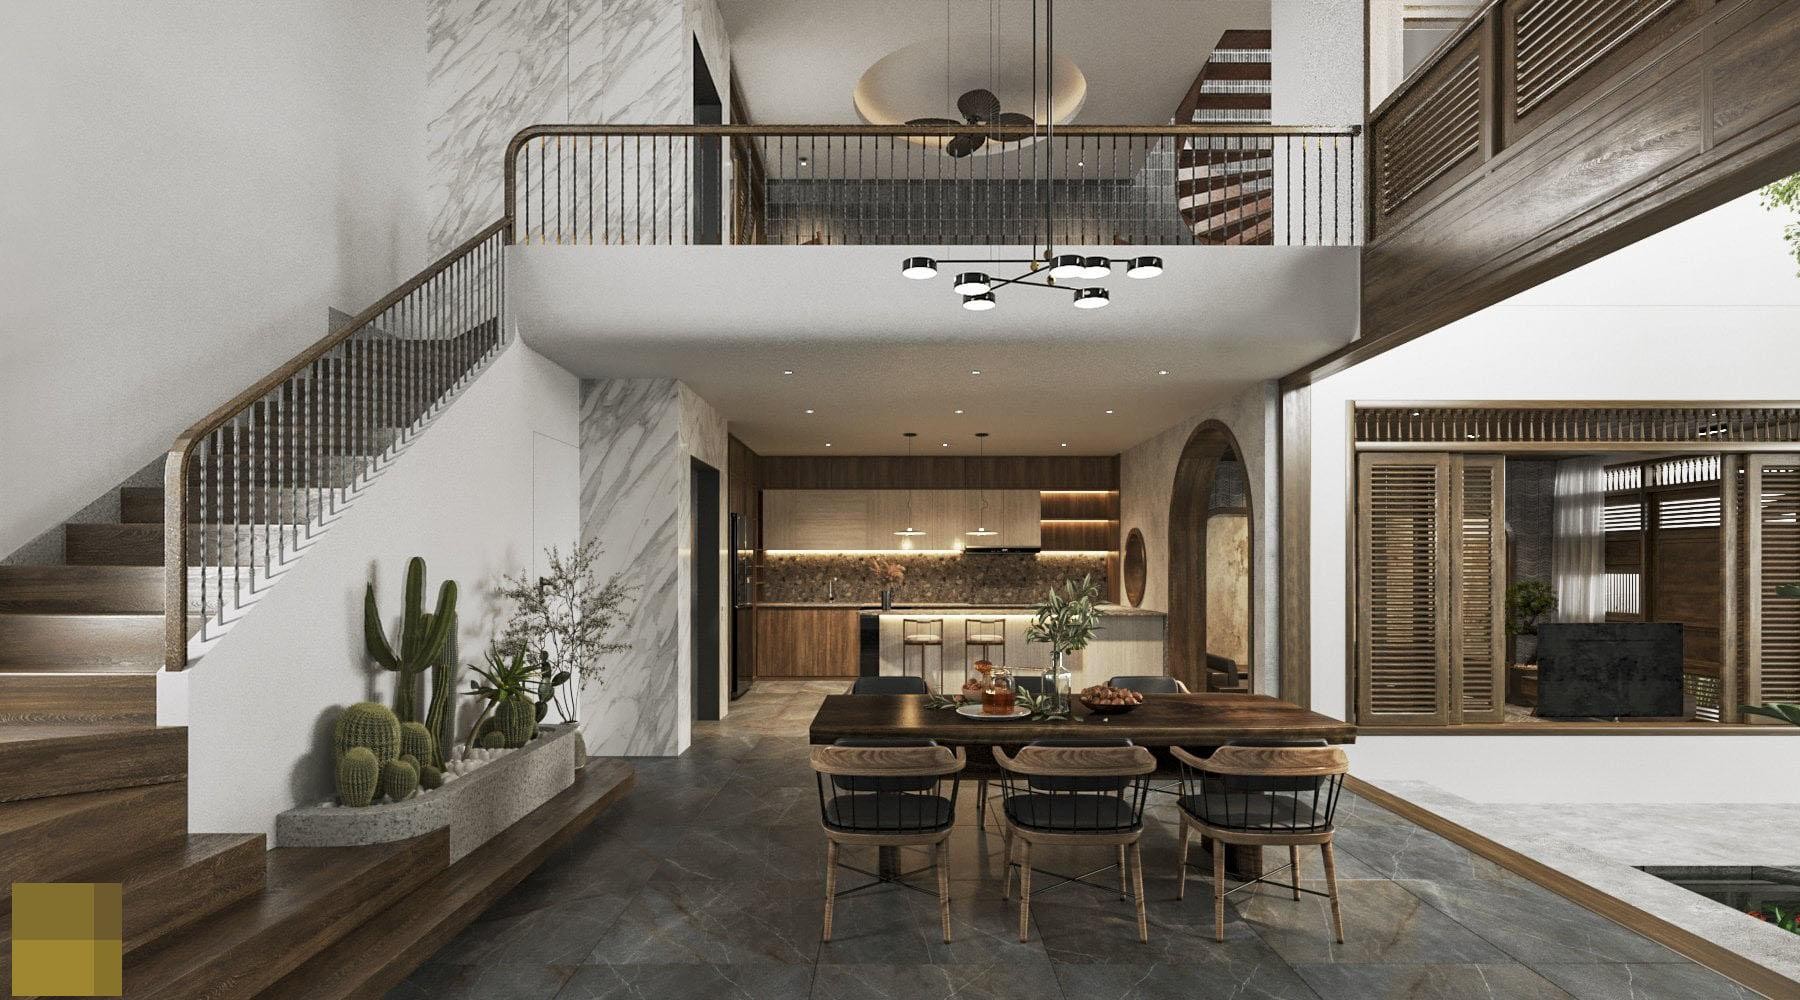 
Bên cạnh phòng bếp là cầu thang dẫn lên tầng lửng và các không gian phía trên của căn nhà
